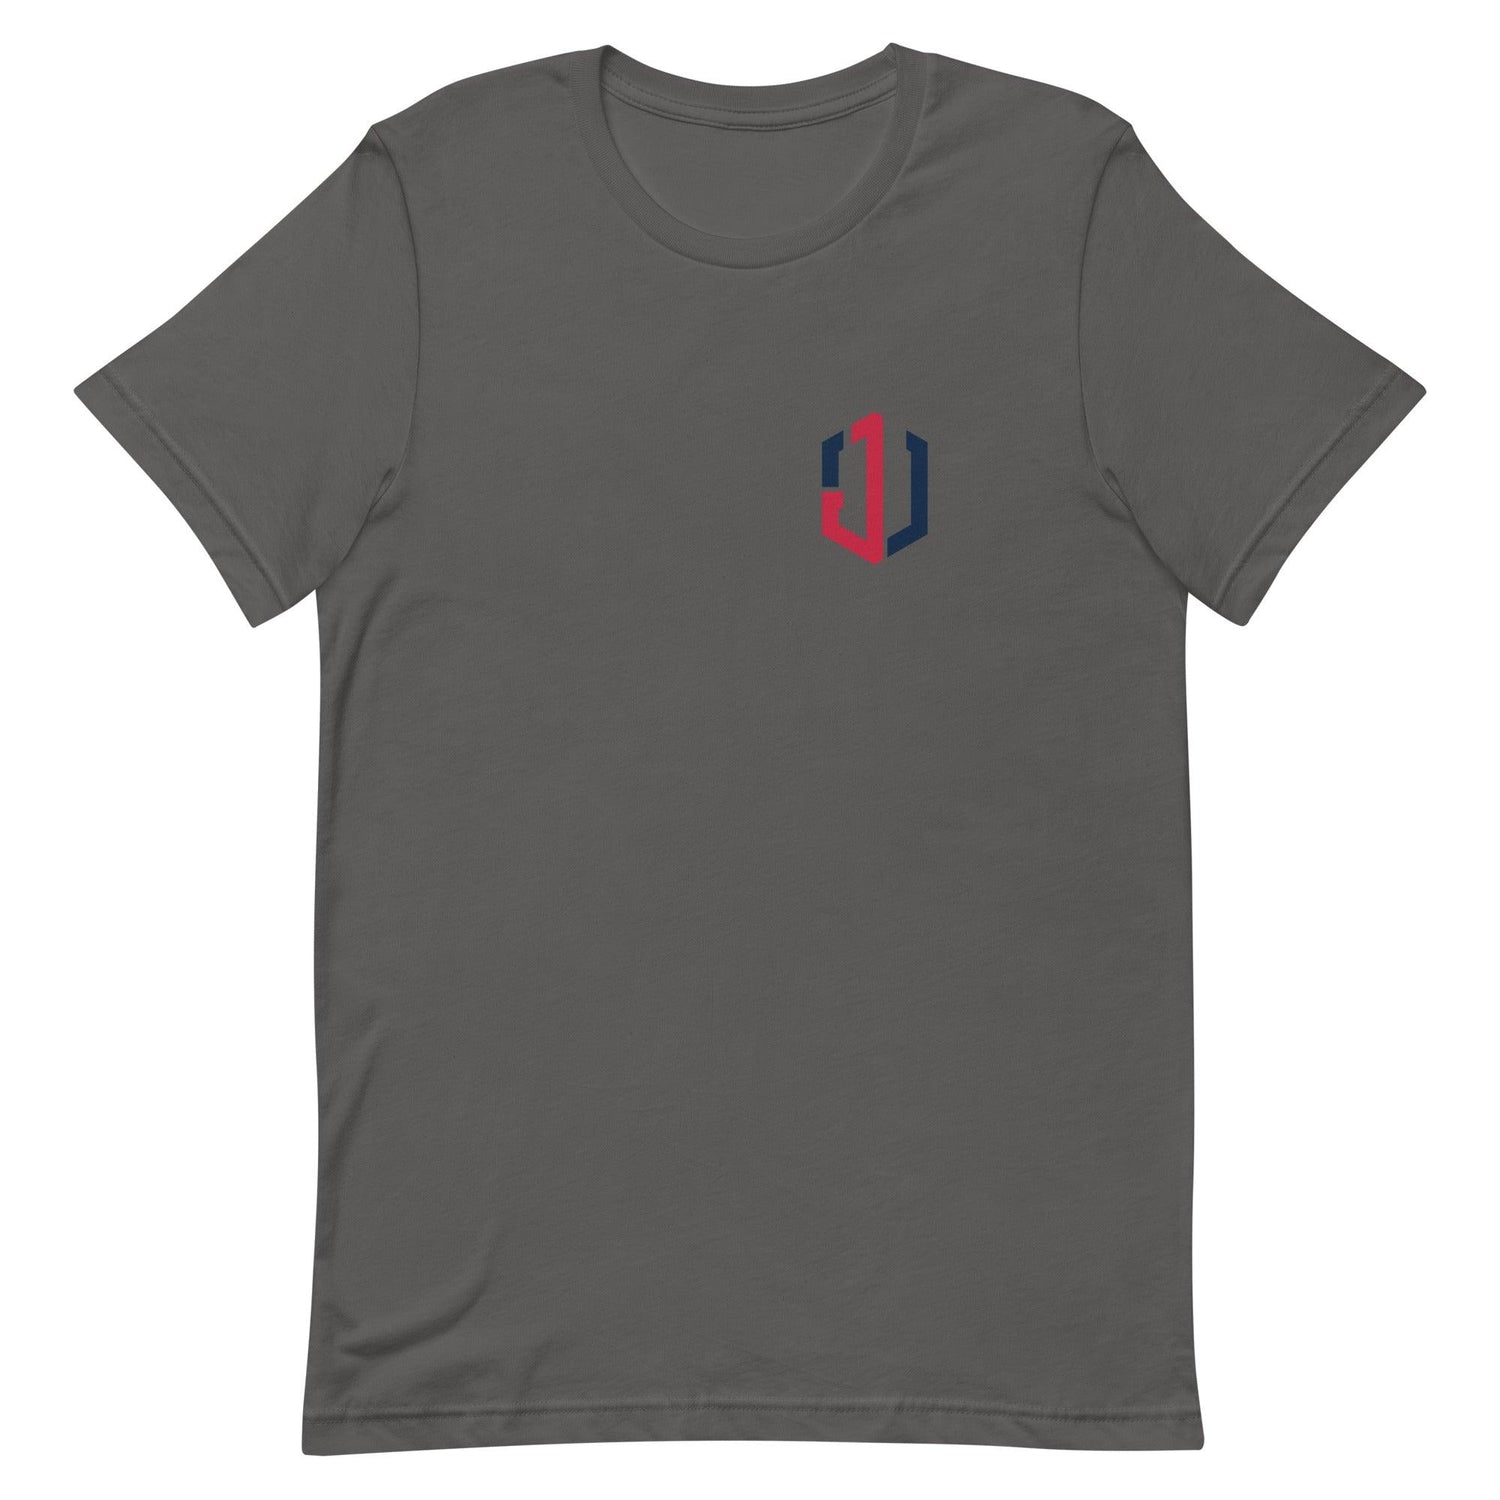 Jordan Walker “JW” t-shirt - Fan Arch